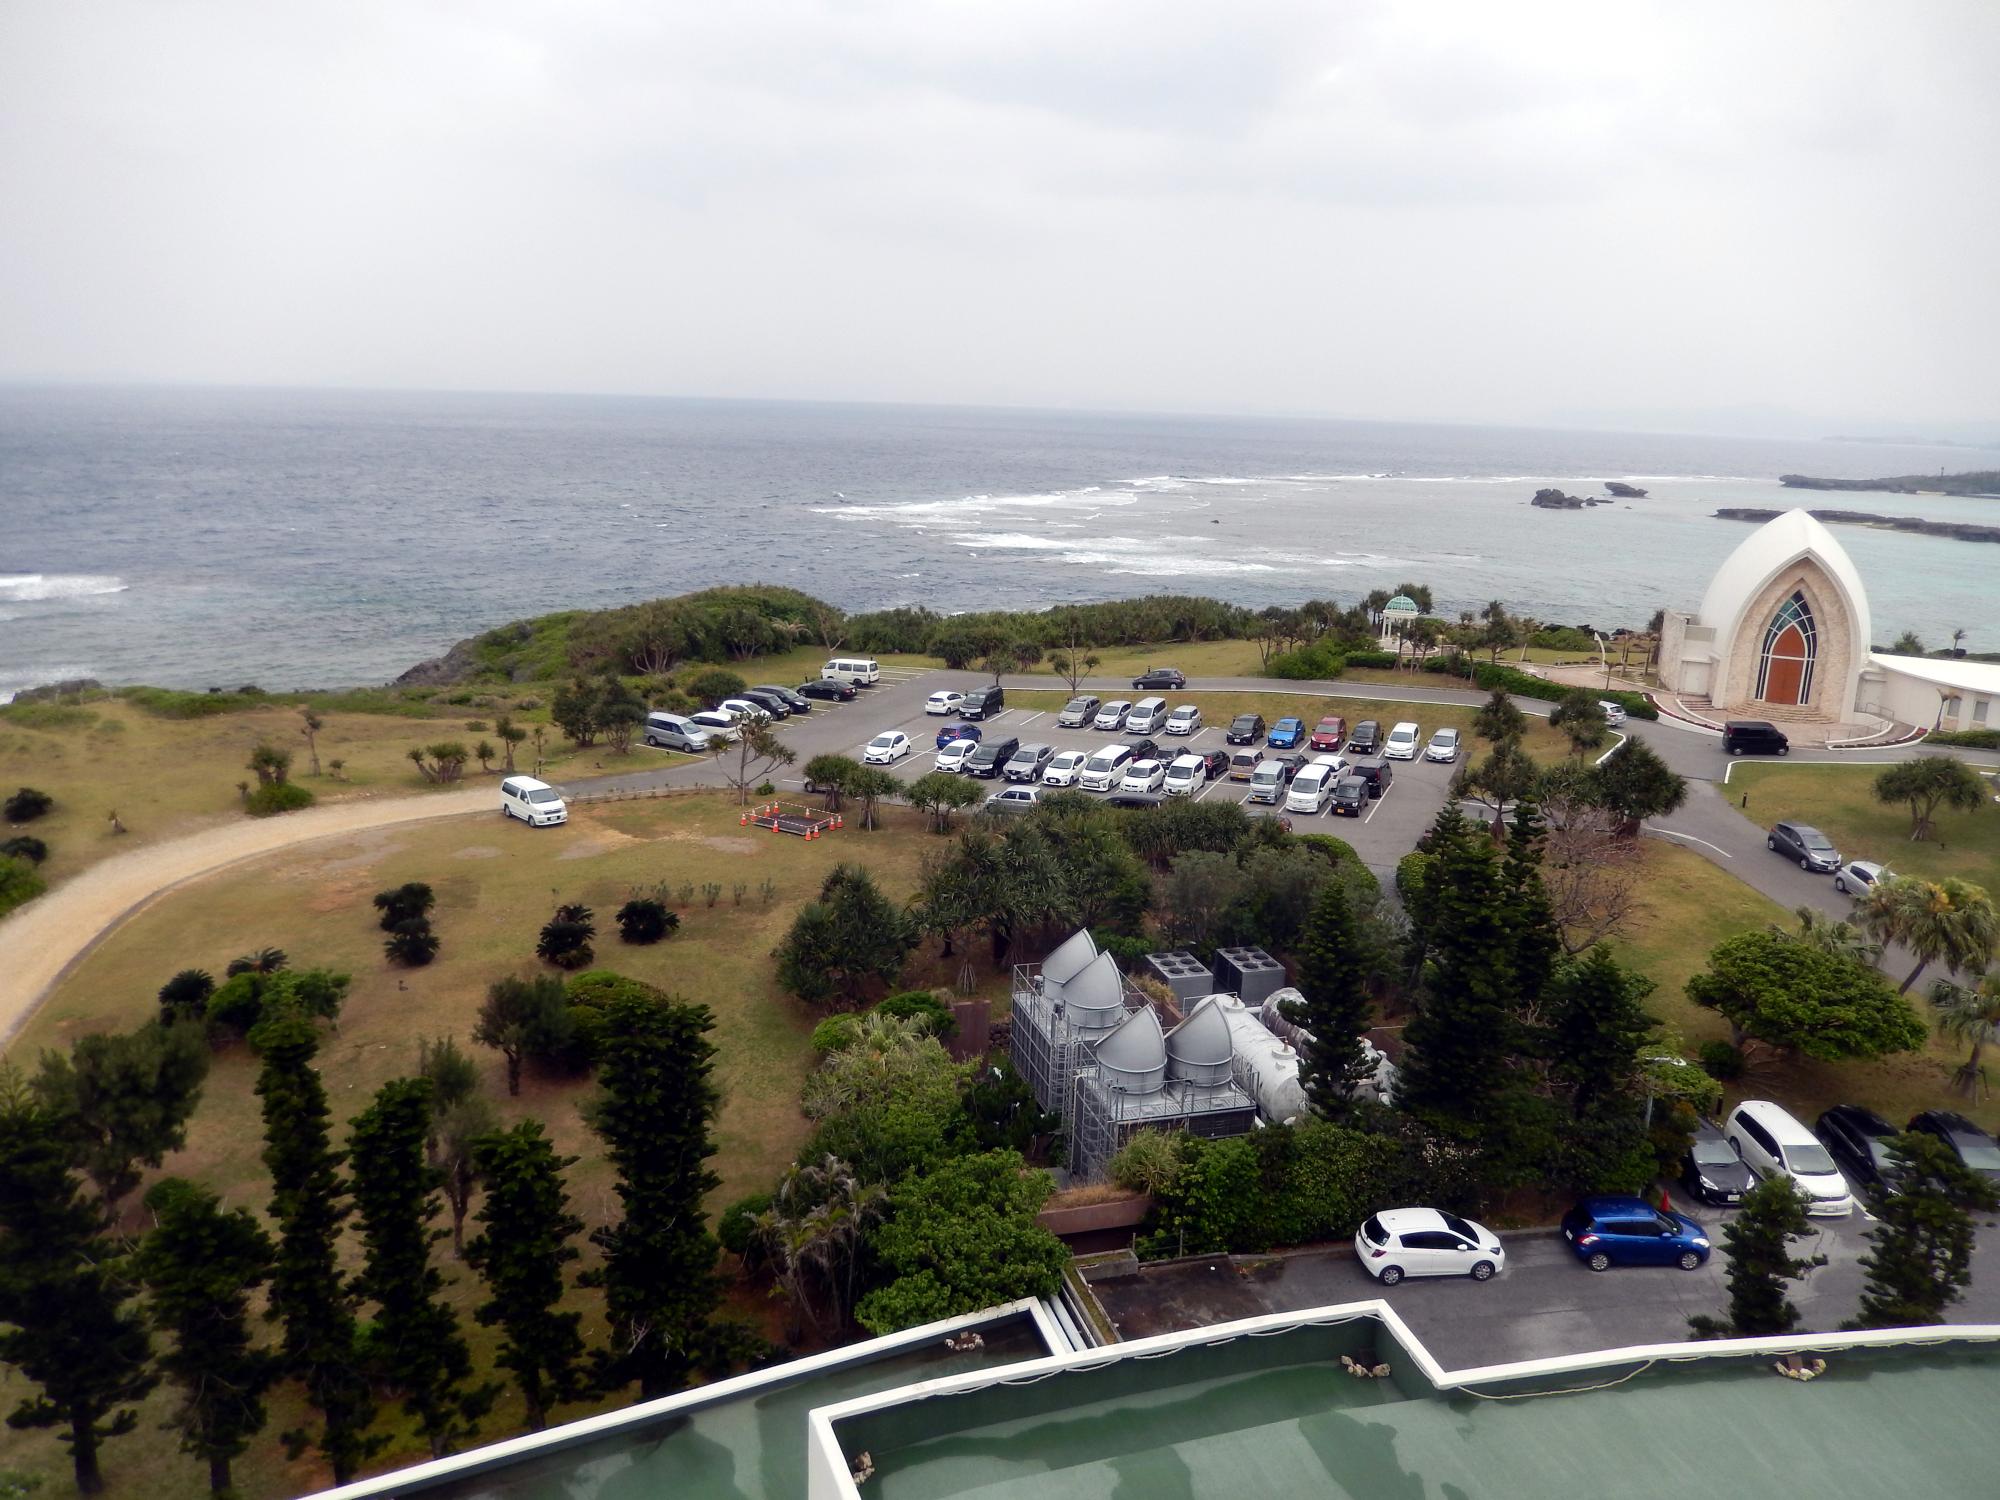 Okinawa - Room View